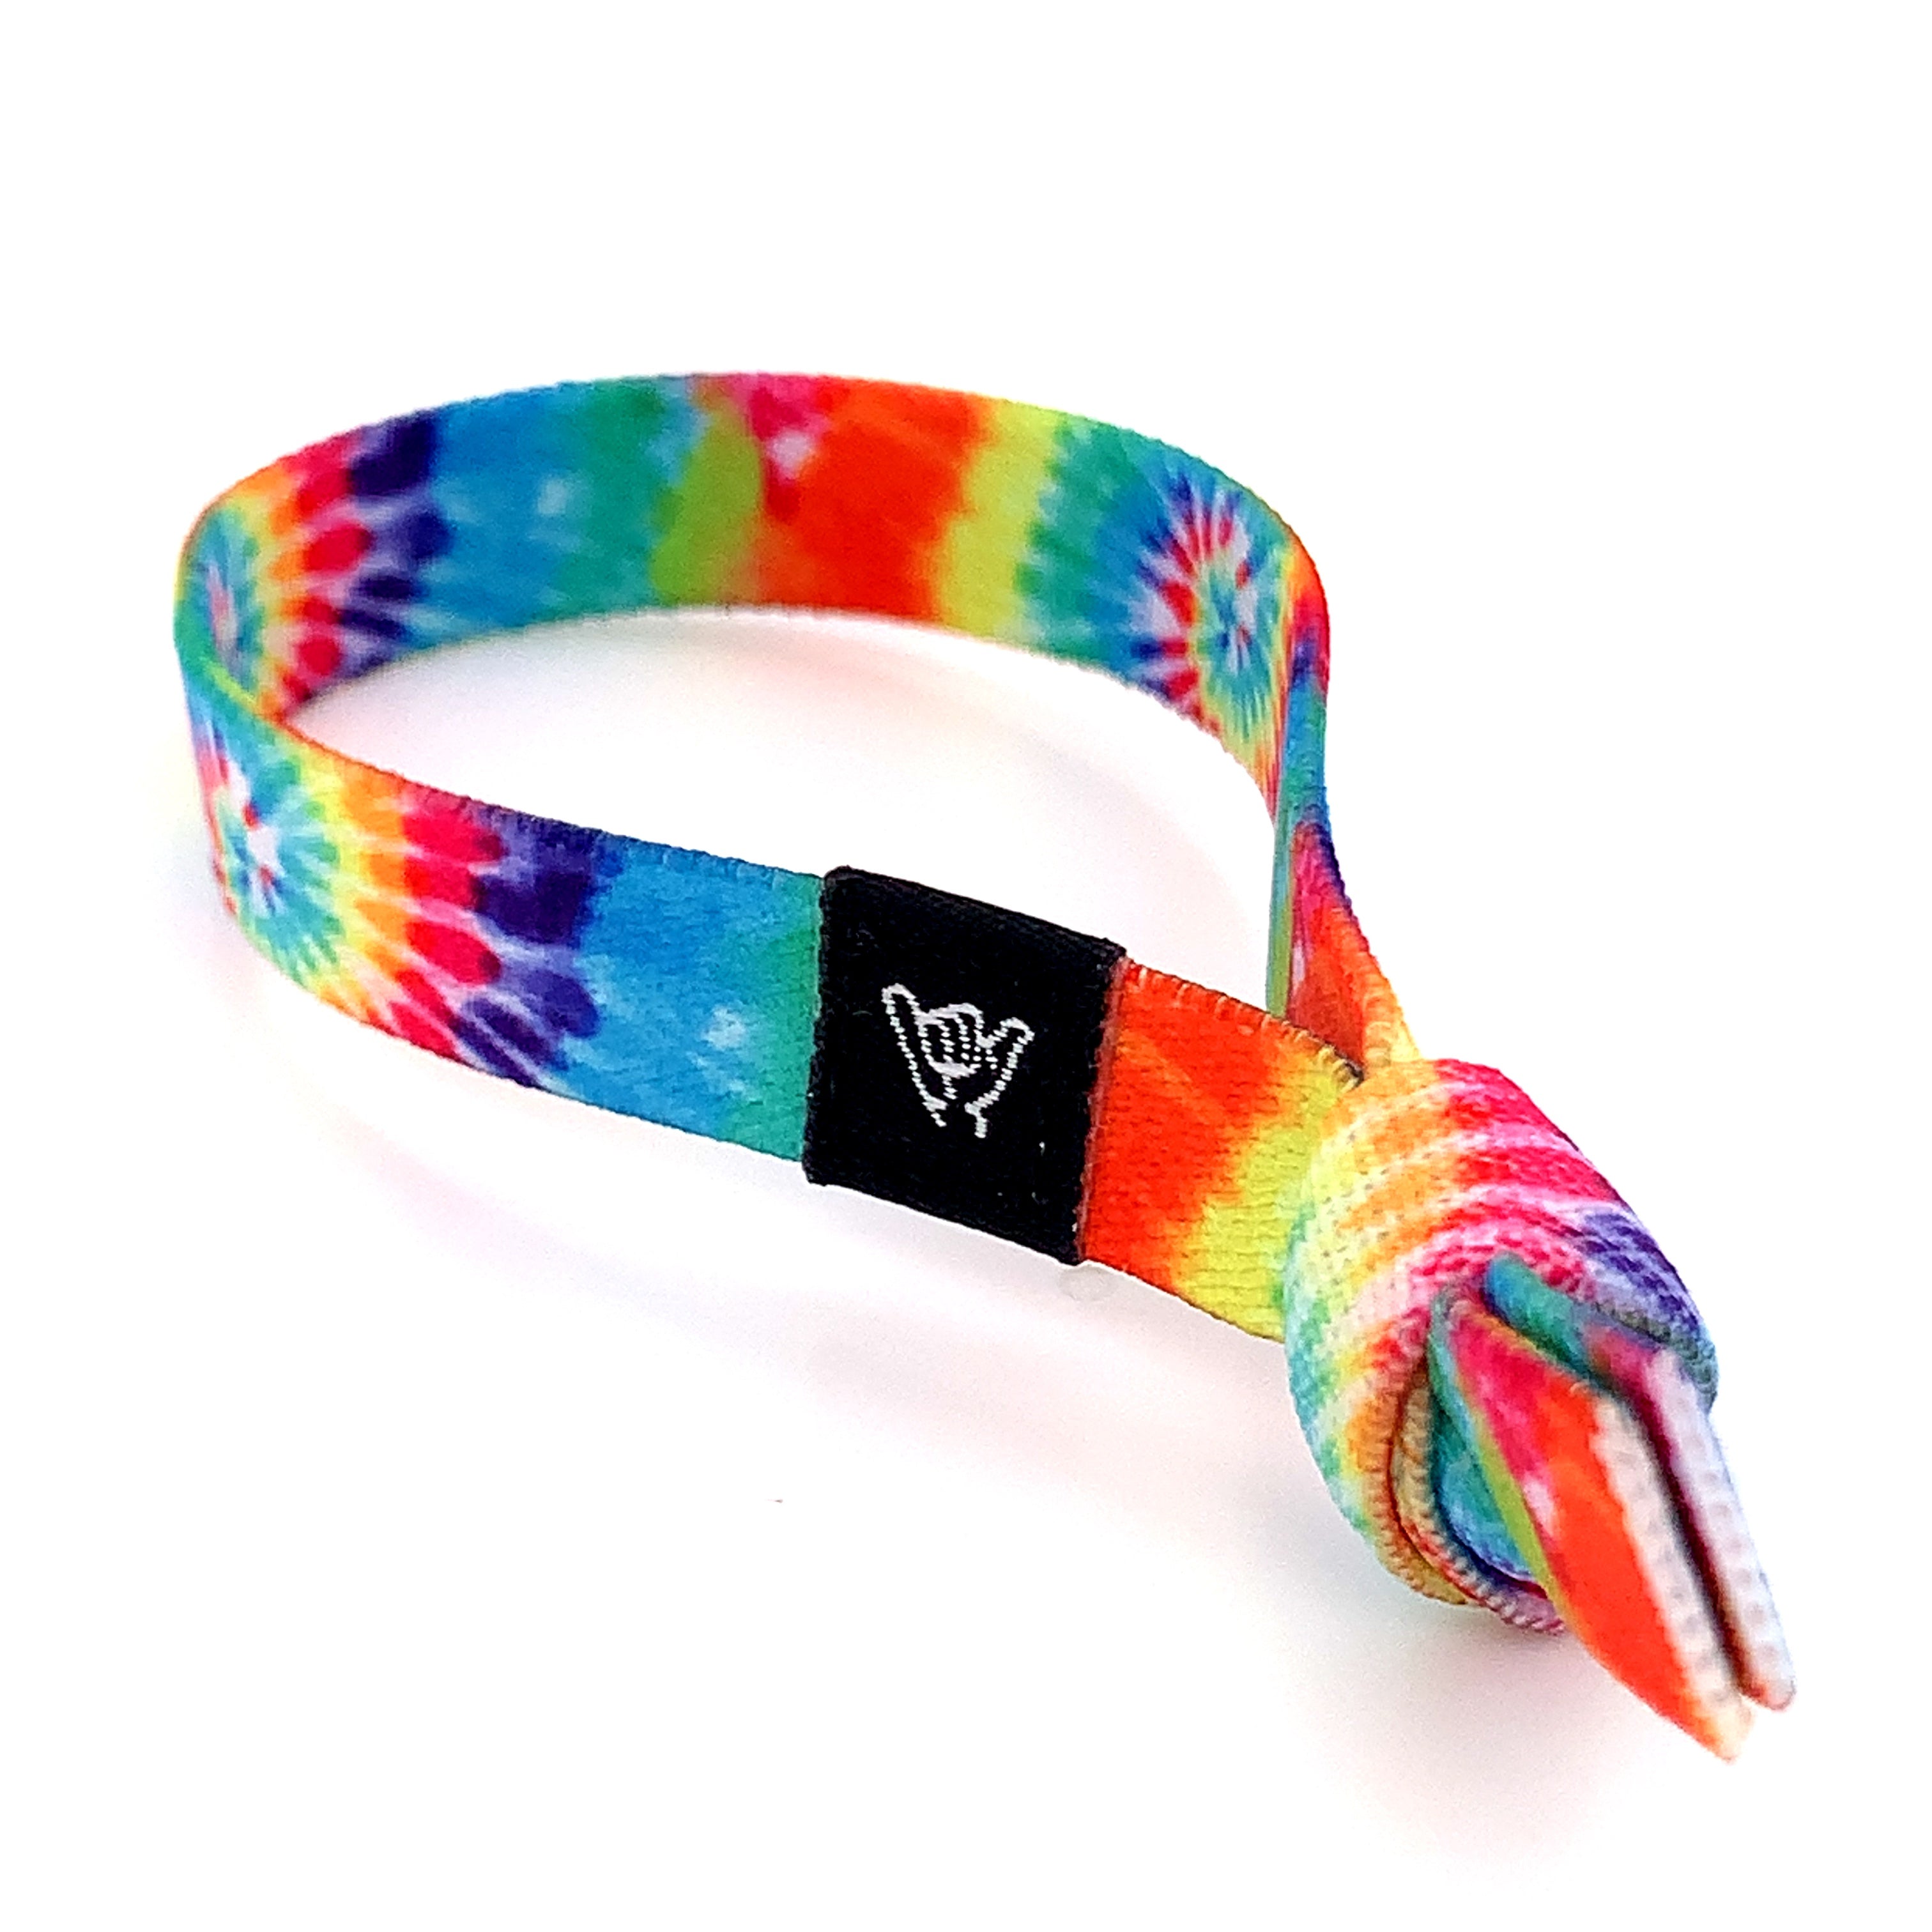 INSPIRE - Tie Dye Stretchy Bracelet – ATHLETE INSPIRED